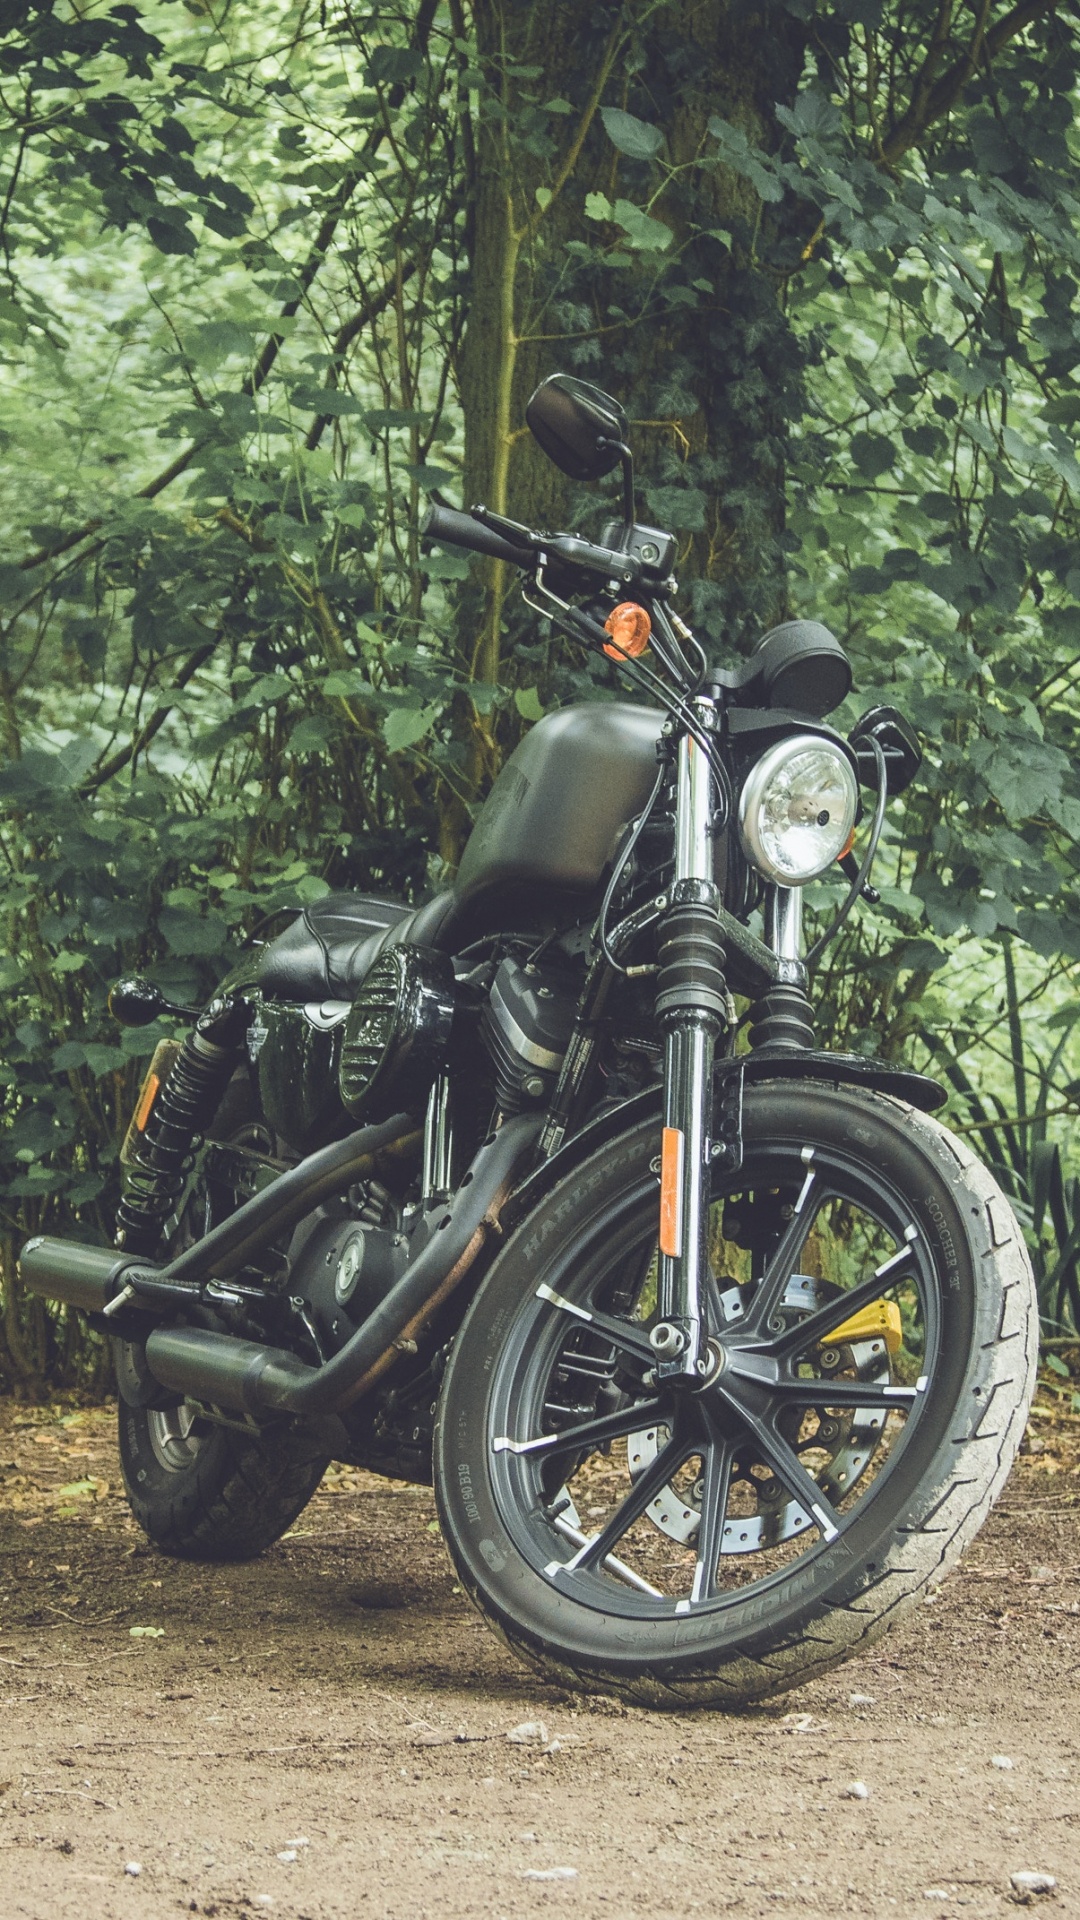 Motocicleta Negra Estacionada en Camino de Tierra Entre Árboles Verdes Durante el Día. Wallpaper in 1080x1920 Resolution